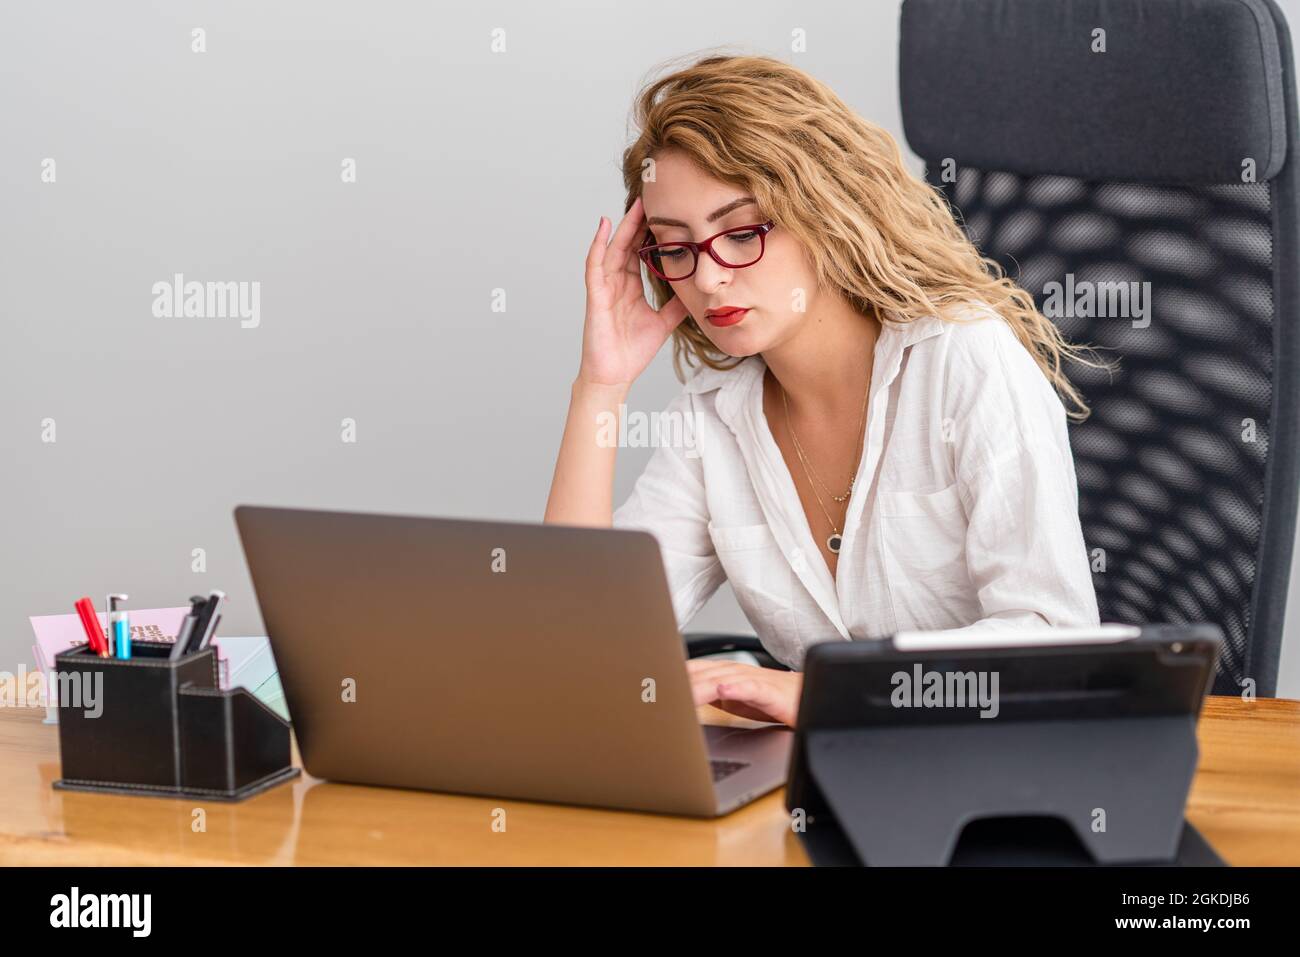 La giovane donna lavora duramente nel suo ufficio e si occupa di prblems, con attrezzature moderne. Foto di alta qualità Foto Stock